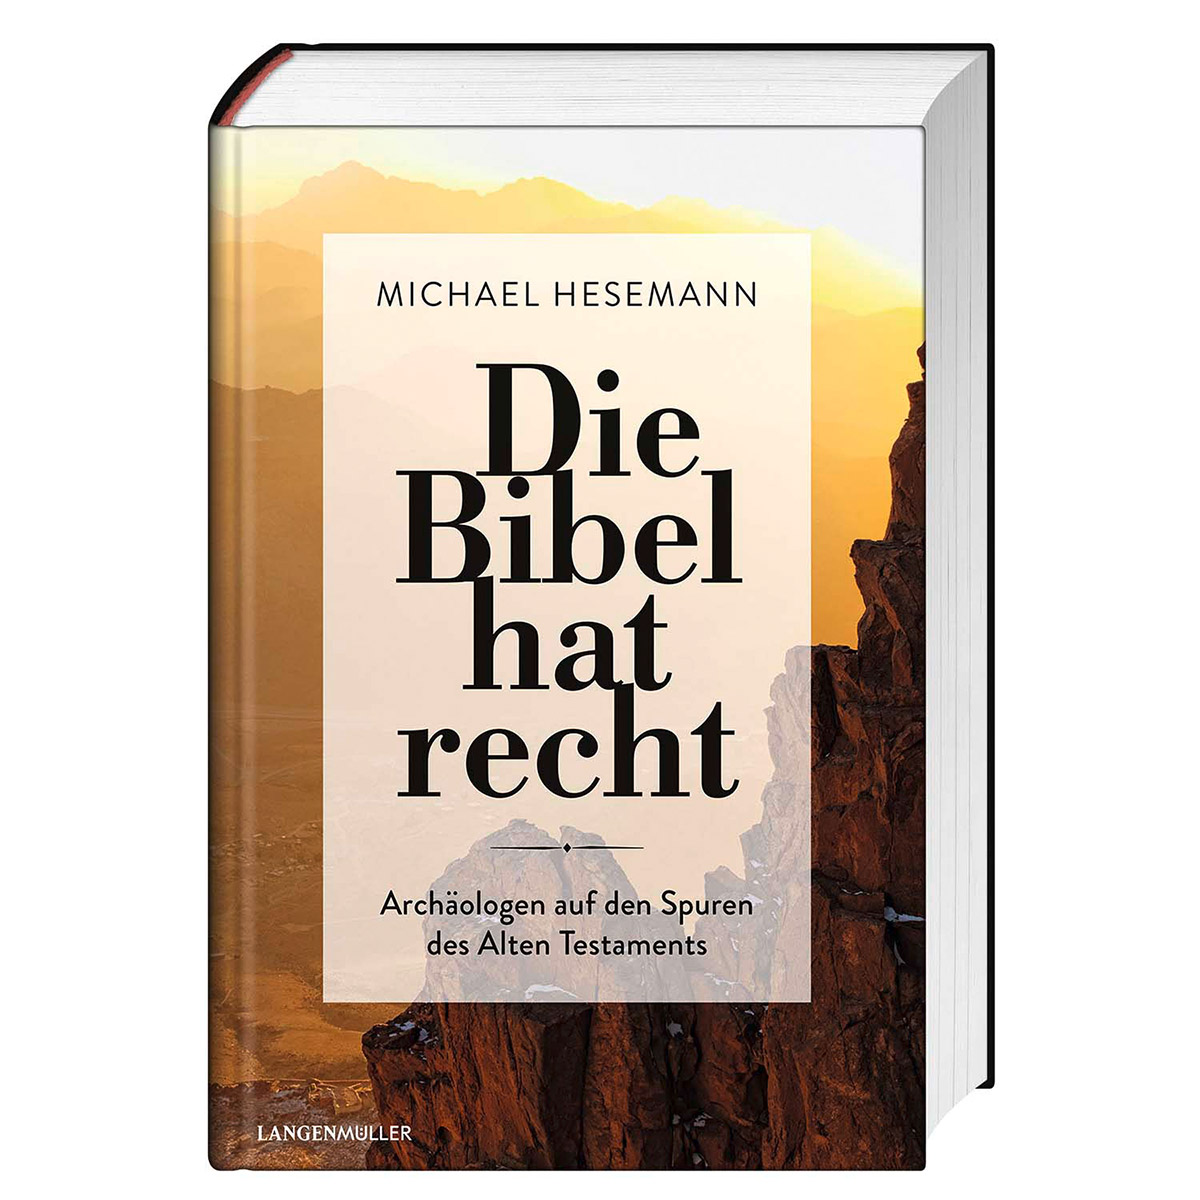 Die Bibel hat recht von Langen - Mueller Verlag